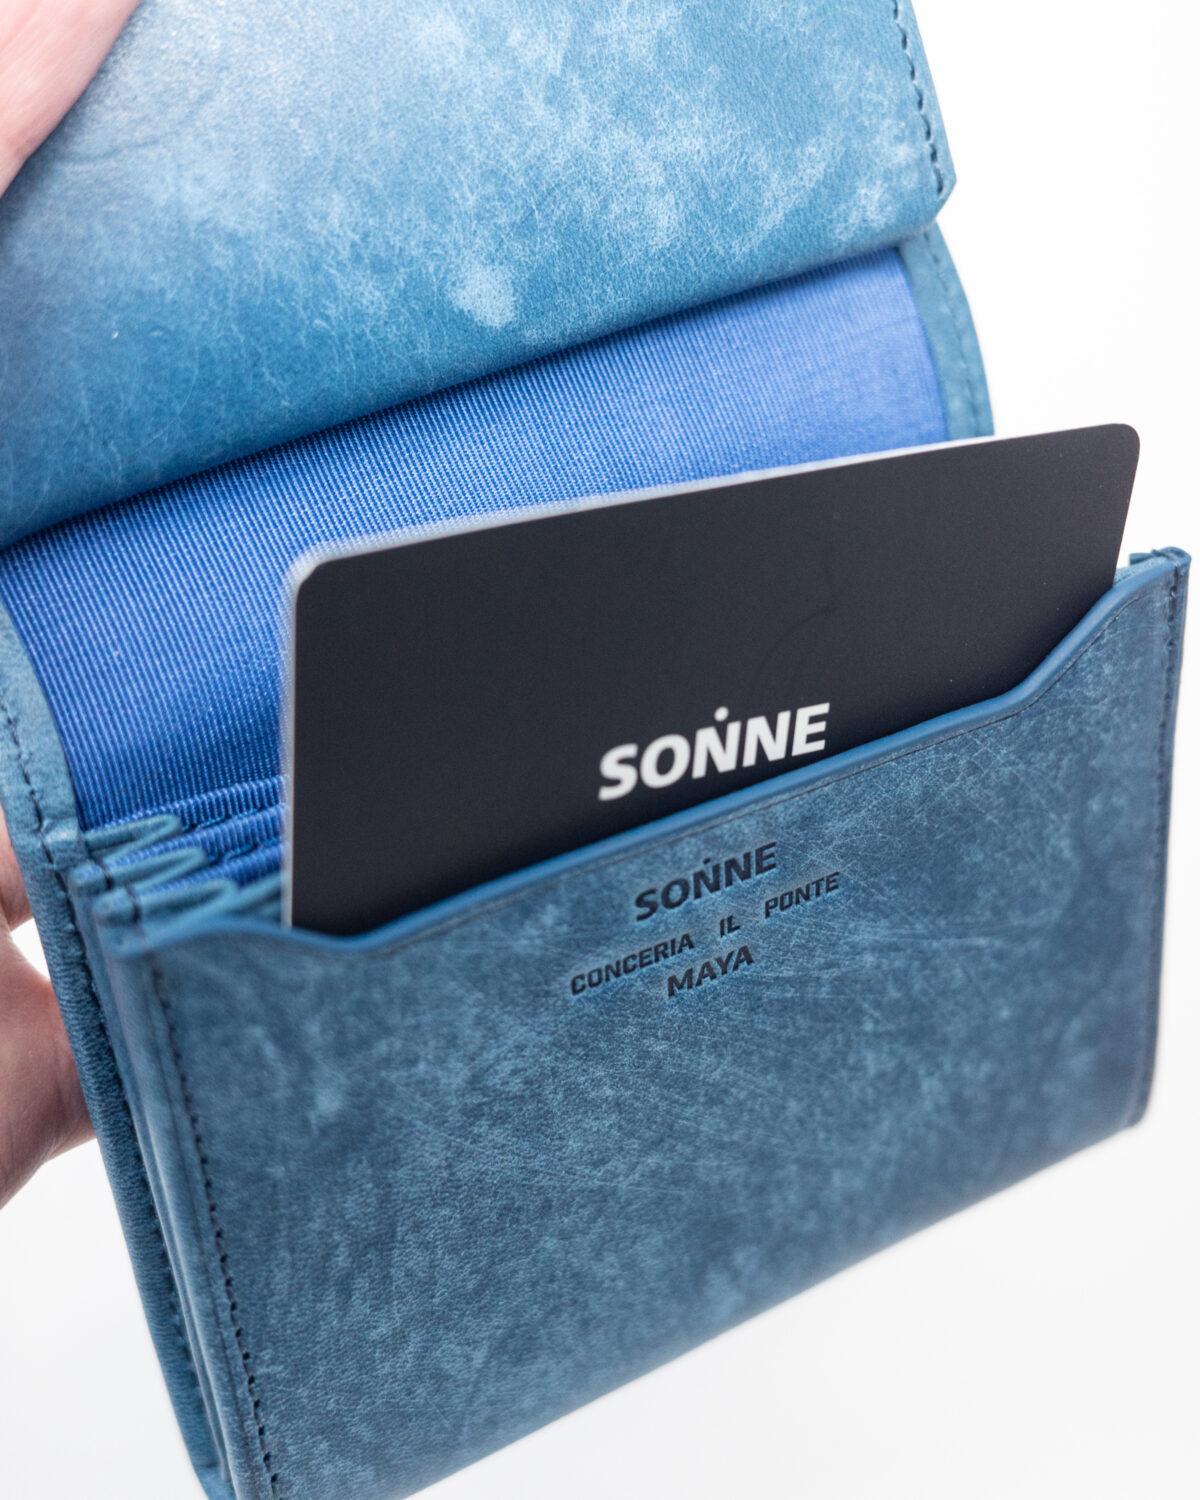 SONNE(ゾンネ)のMAYA二つ折り財布の外カードポケット